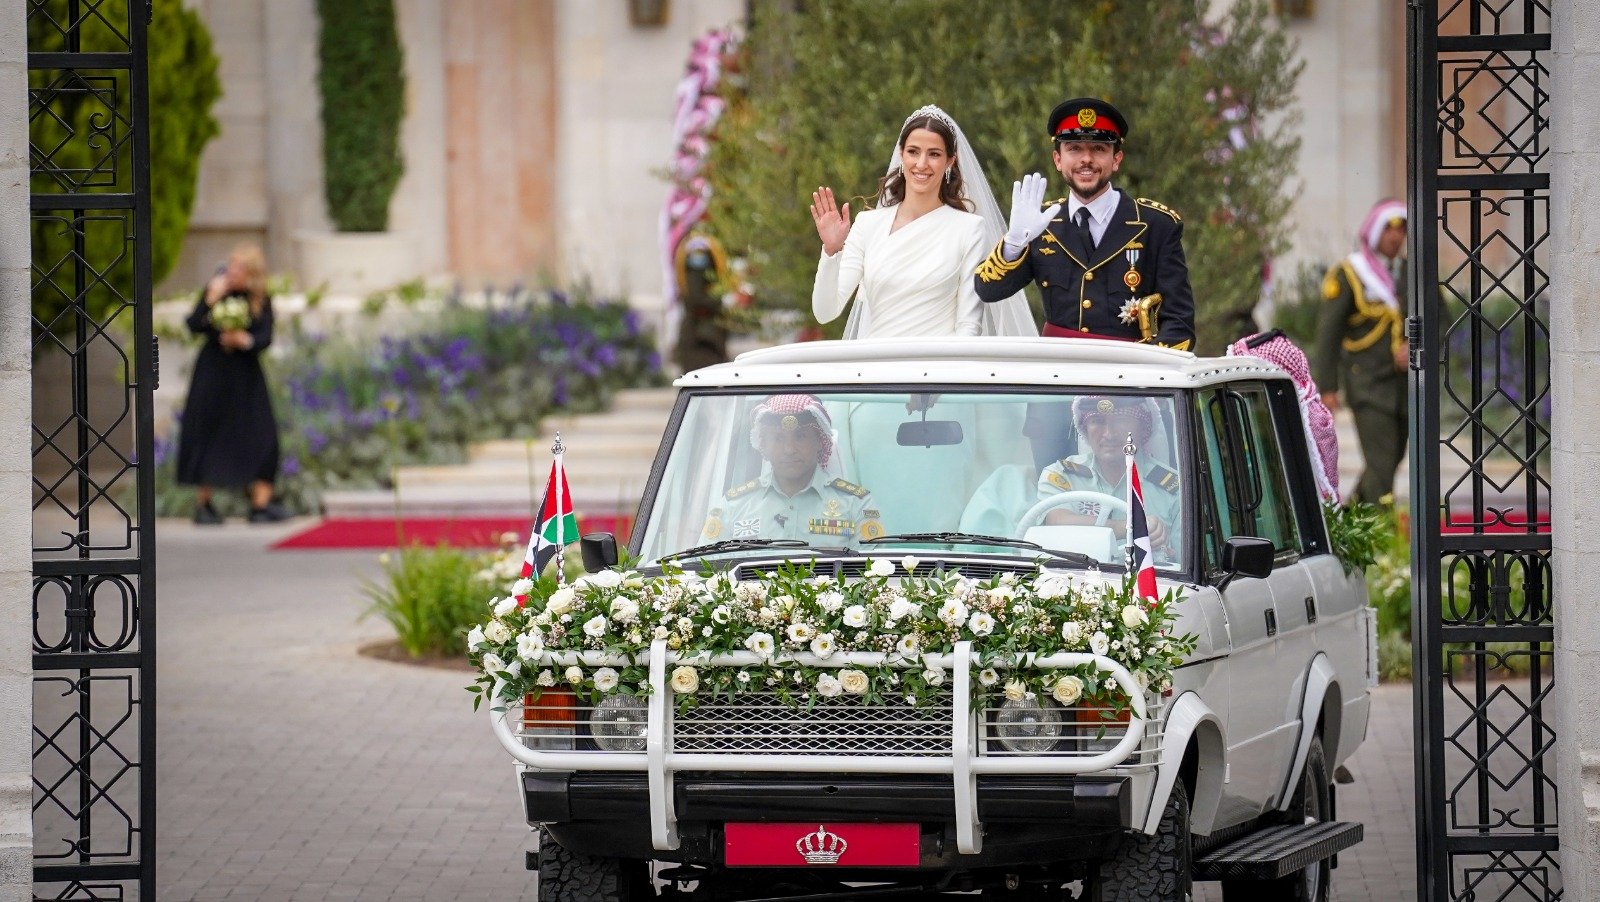 العريسان يتجولان في سيارة مزينة بالورود لتحية الحضور والمحبين بعد انتهاء مراسم الزواج